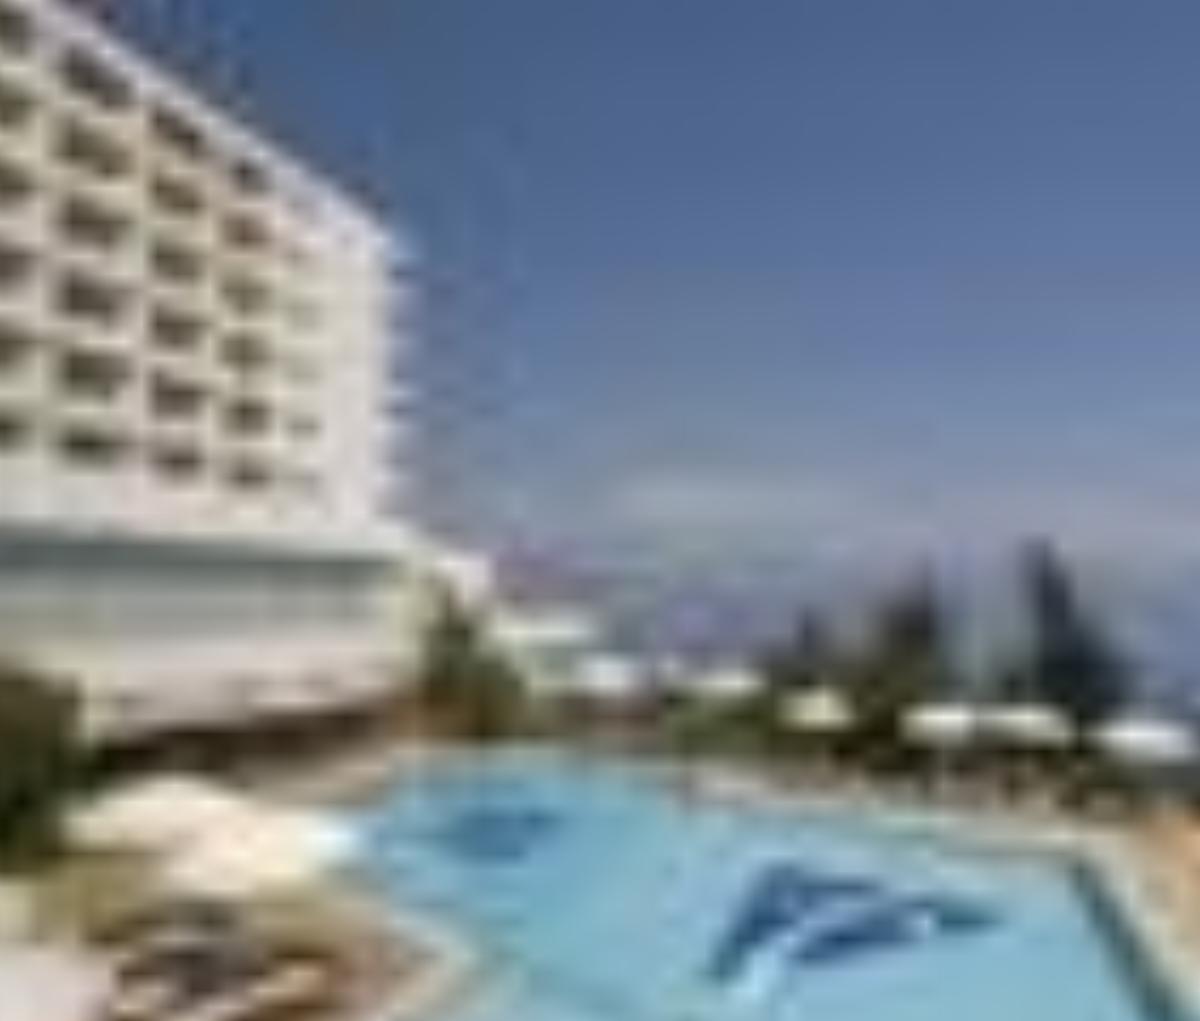 Talya Hotel Antalya Turkey